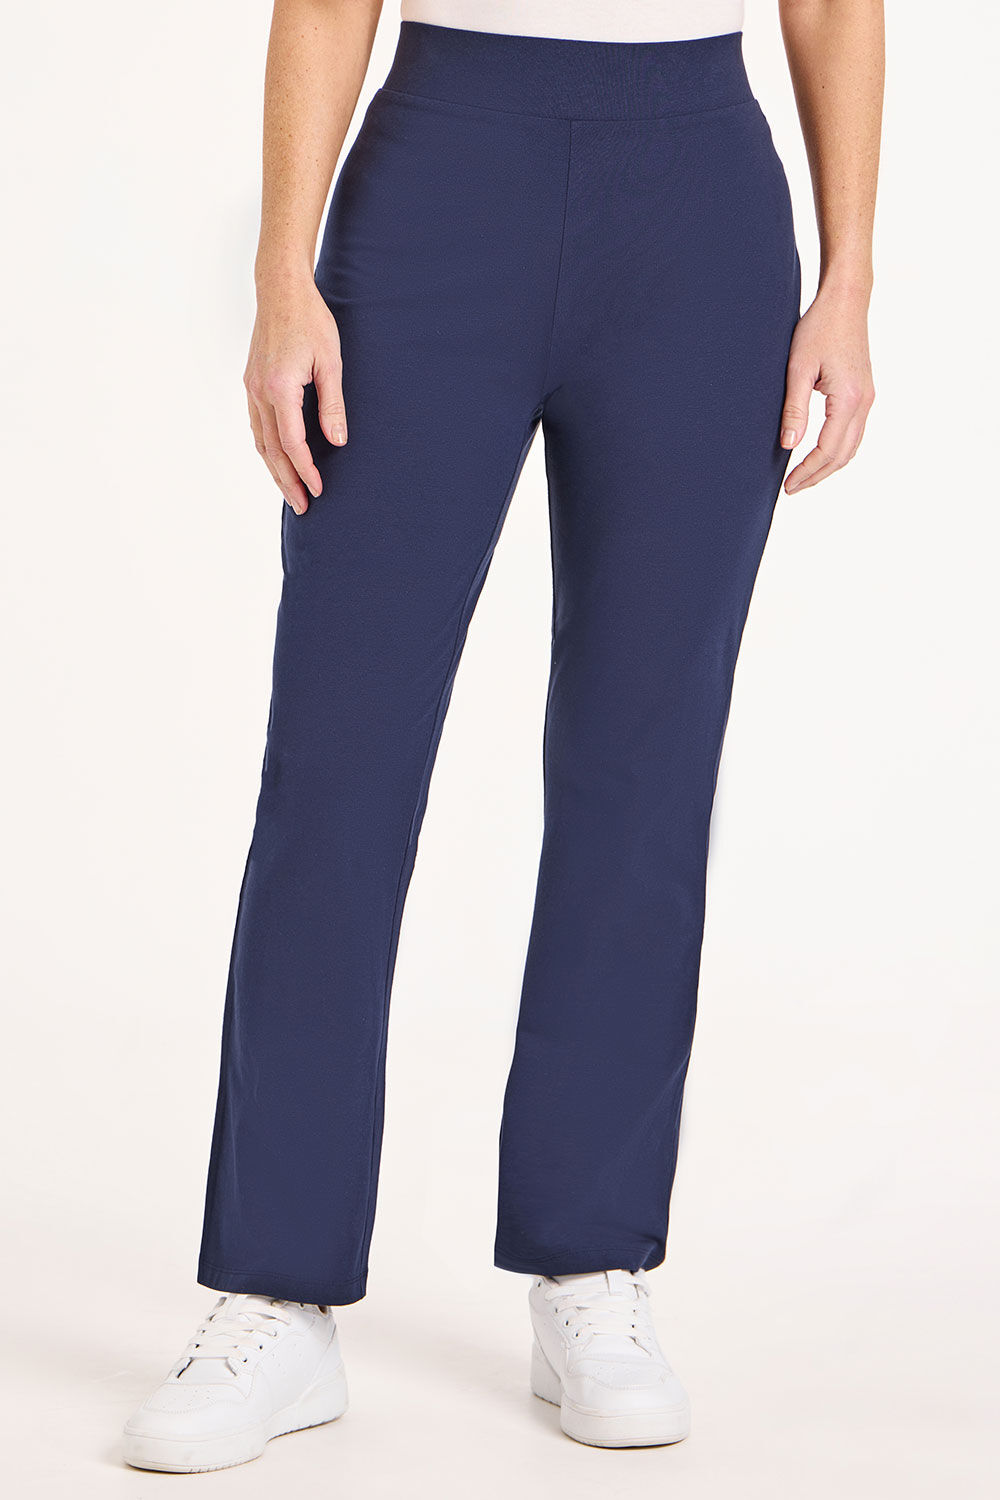 Bonmarche Ladies Navy Blue Cotton Short Yoga Pants, Size: 22